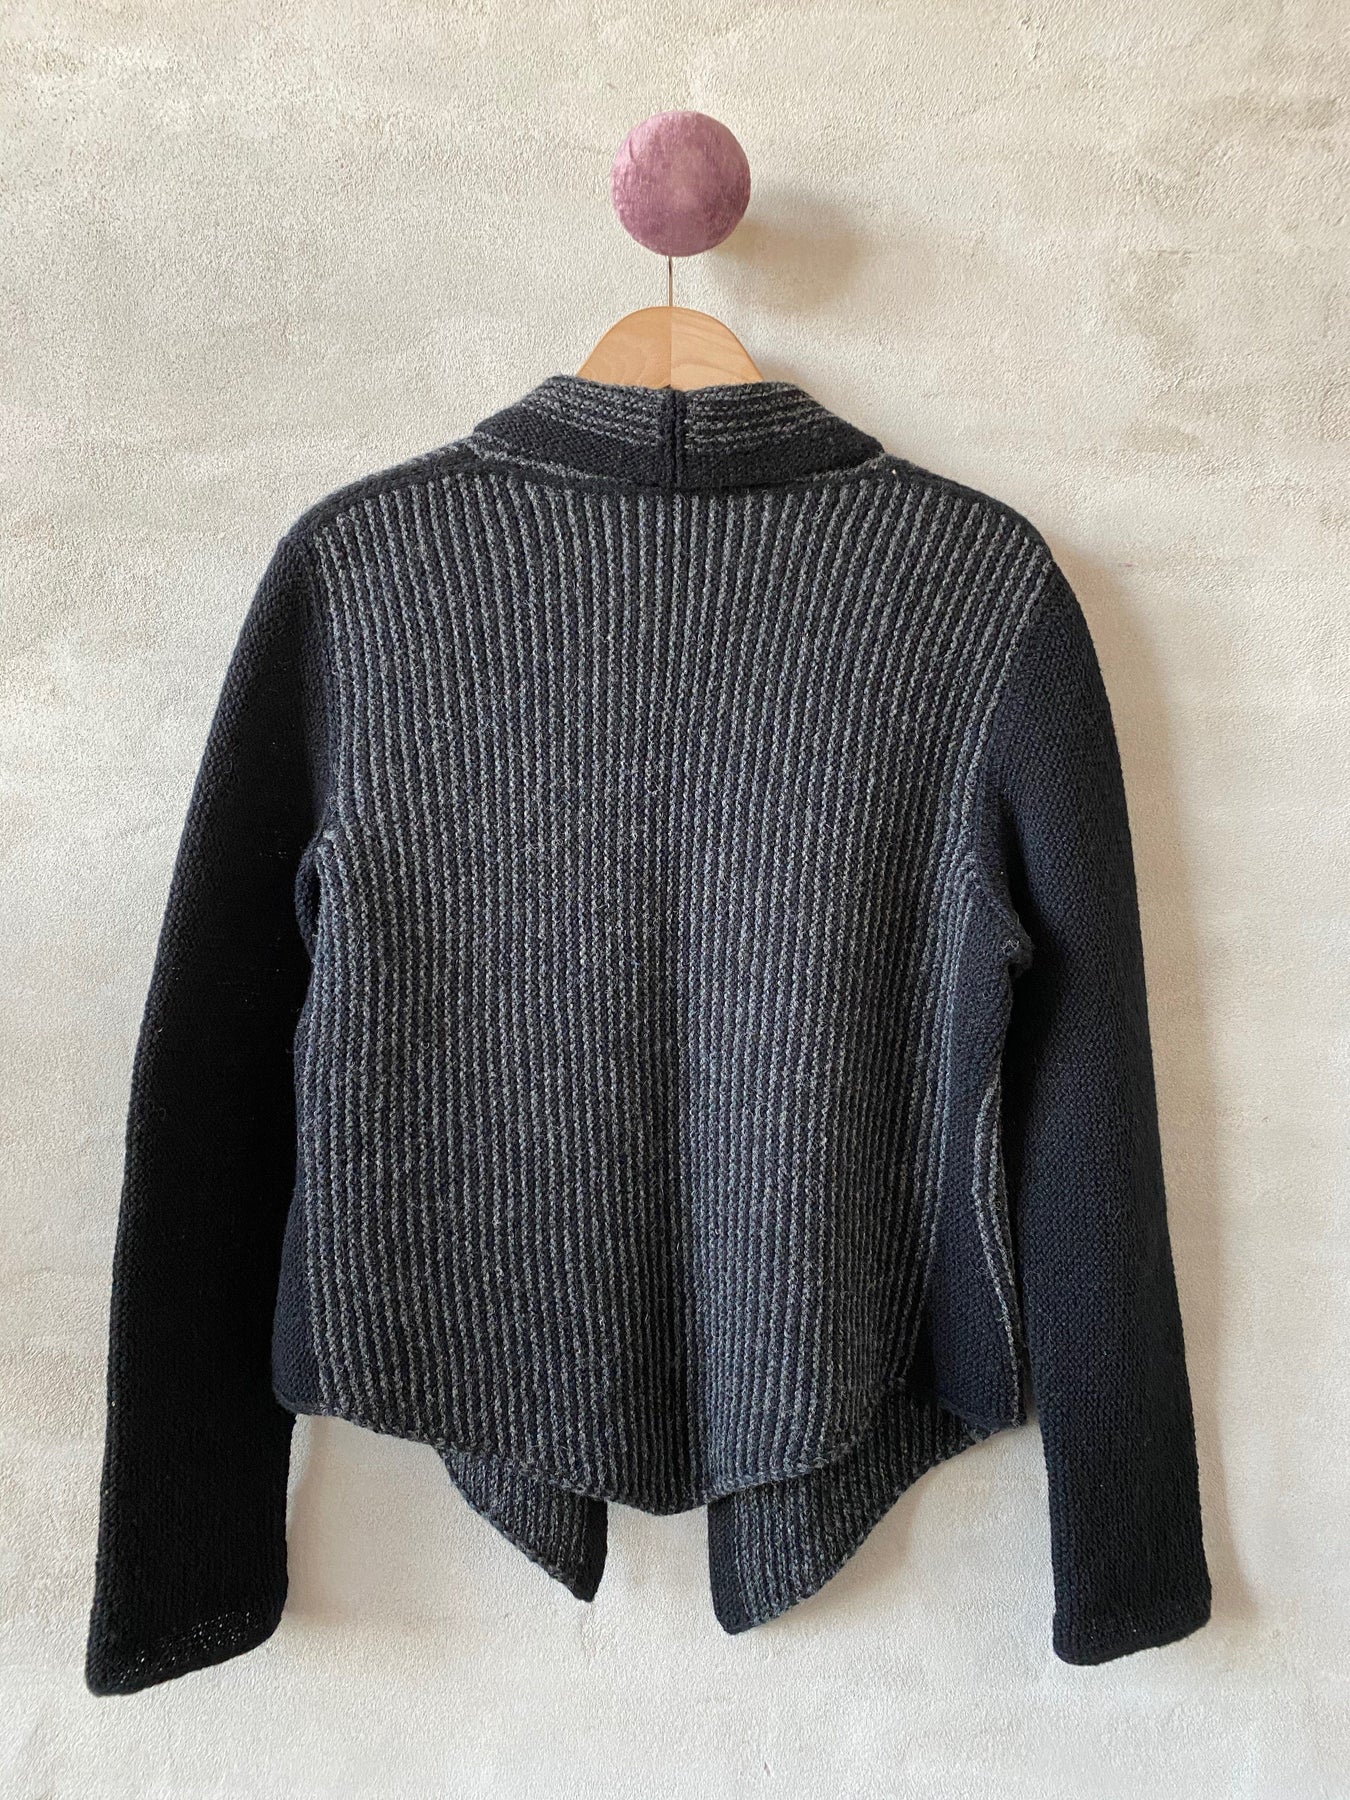 Solo jacket by Hanne Falkenberg, knitting Önling INT